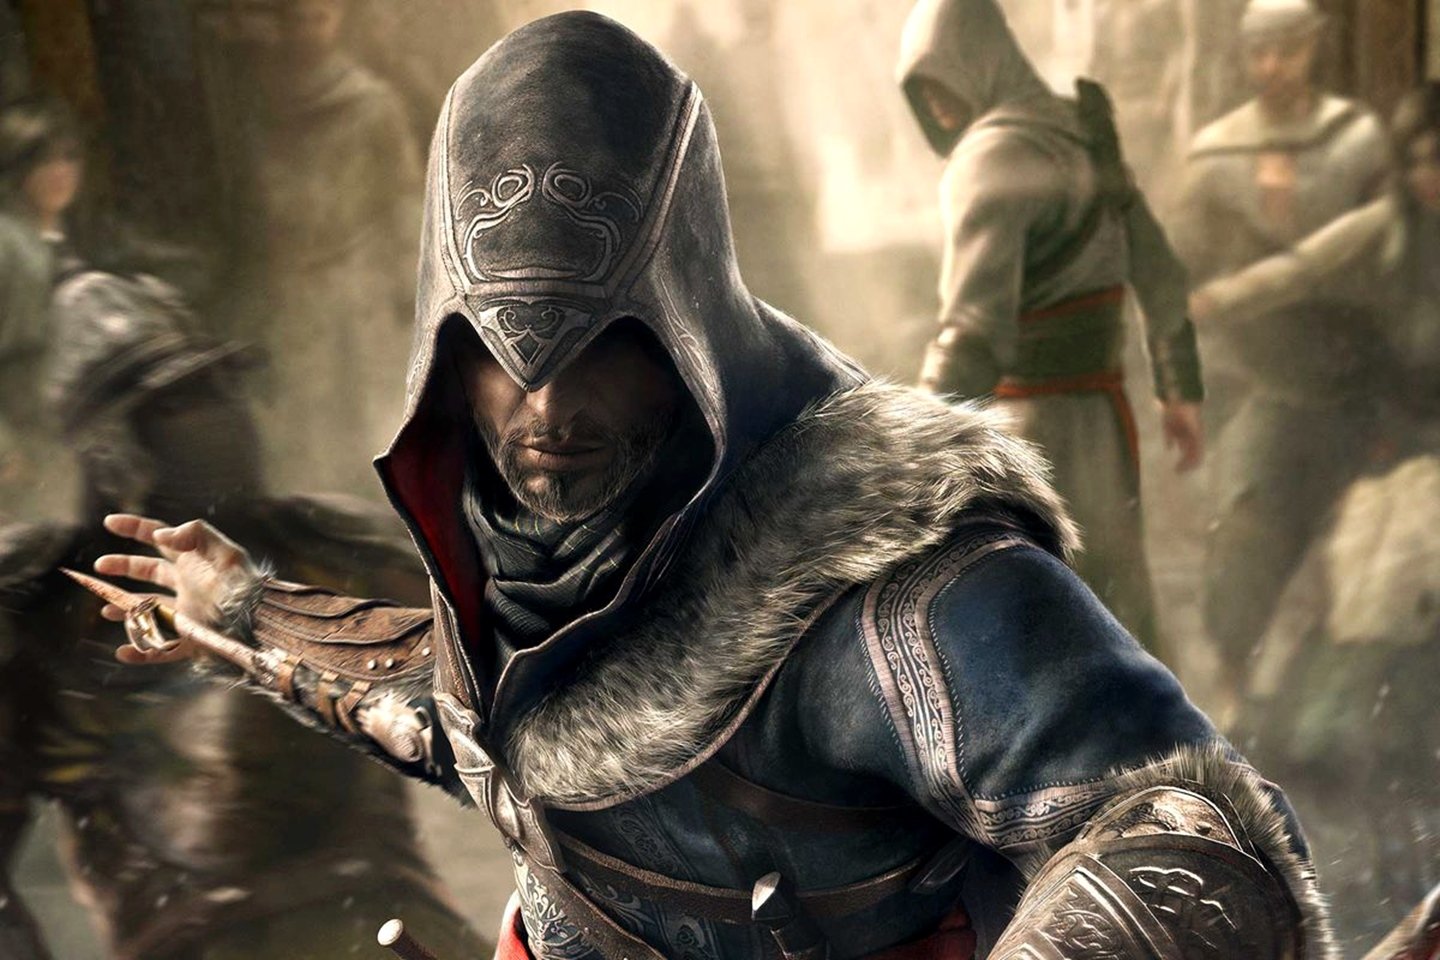 Vários remakes de Assassin's Creed estão em produção, confirma Ubisoft